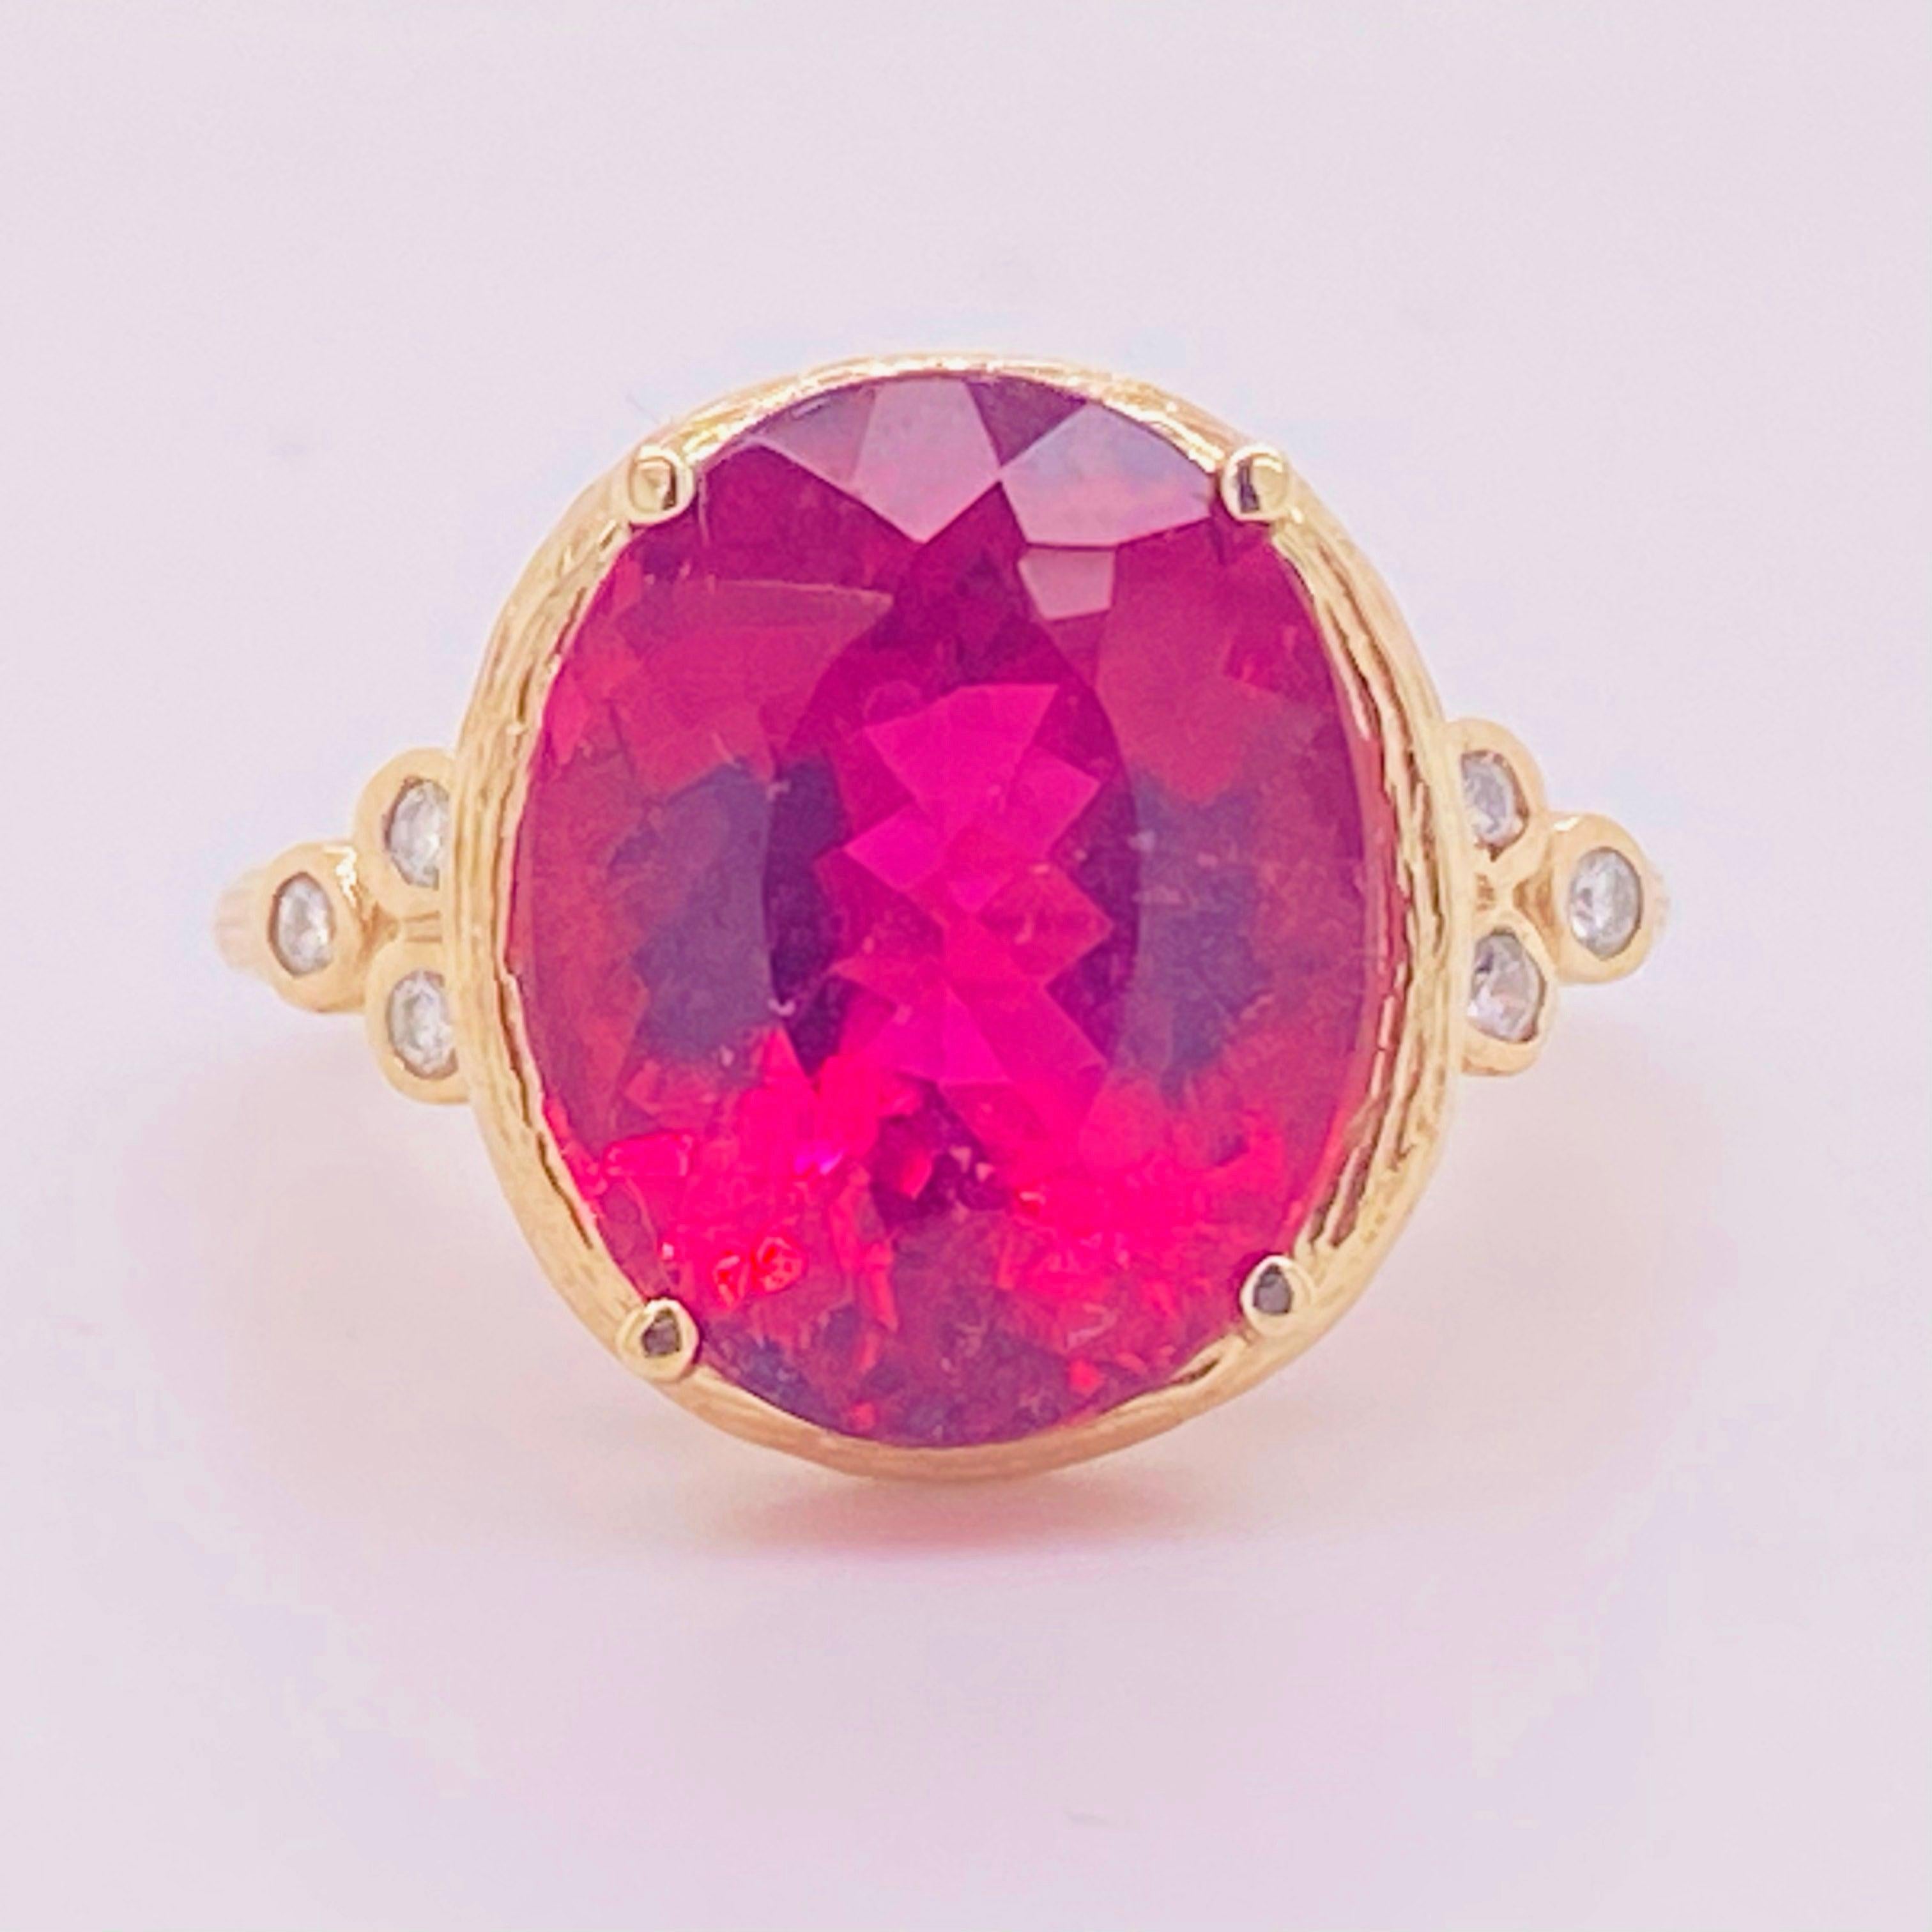 Tourmaline Diamond Ring, 14 Karat Yellow Gold, Pink, Rubellite, Statement 4